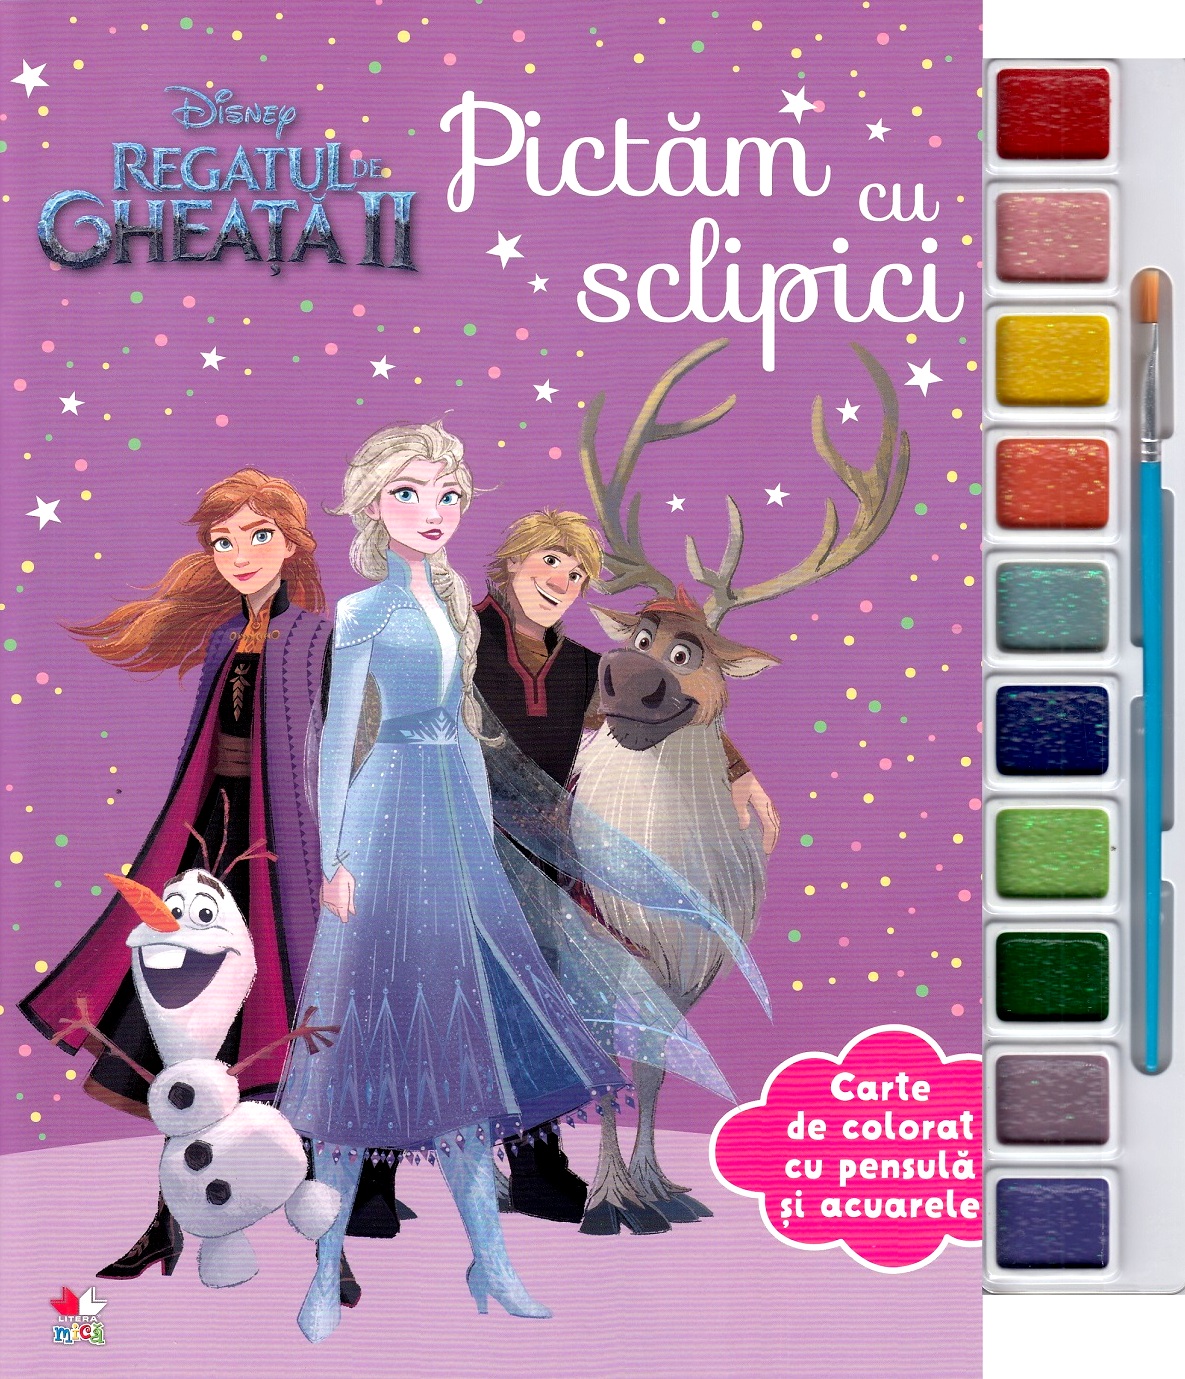 Disney: Regatul de gheata II. Pictam cu sclipici. Carte de colorat cu pensula si acuarele